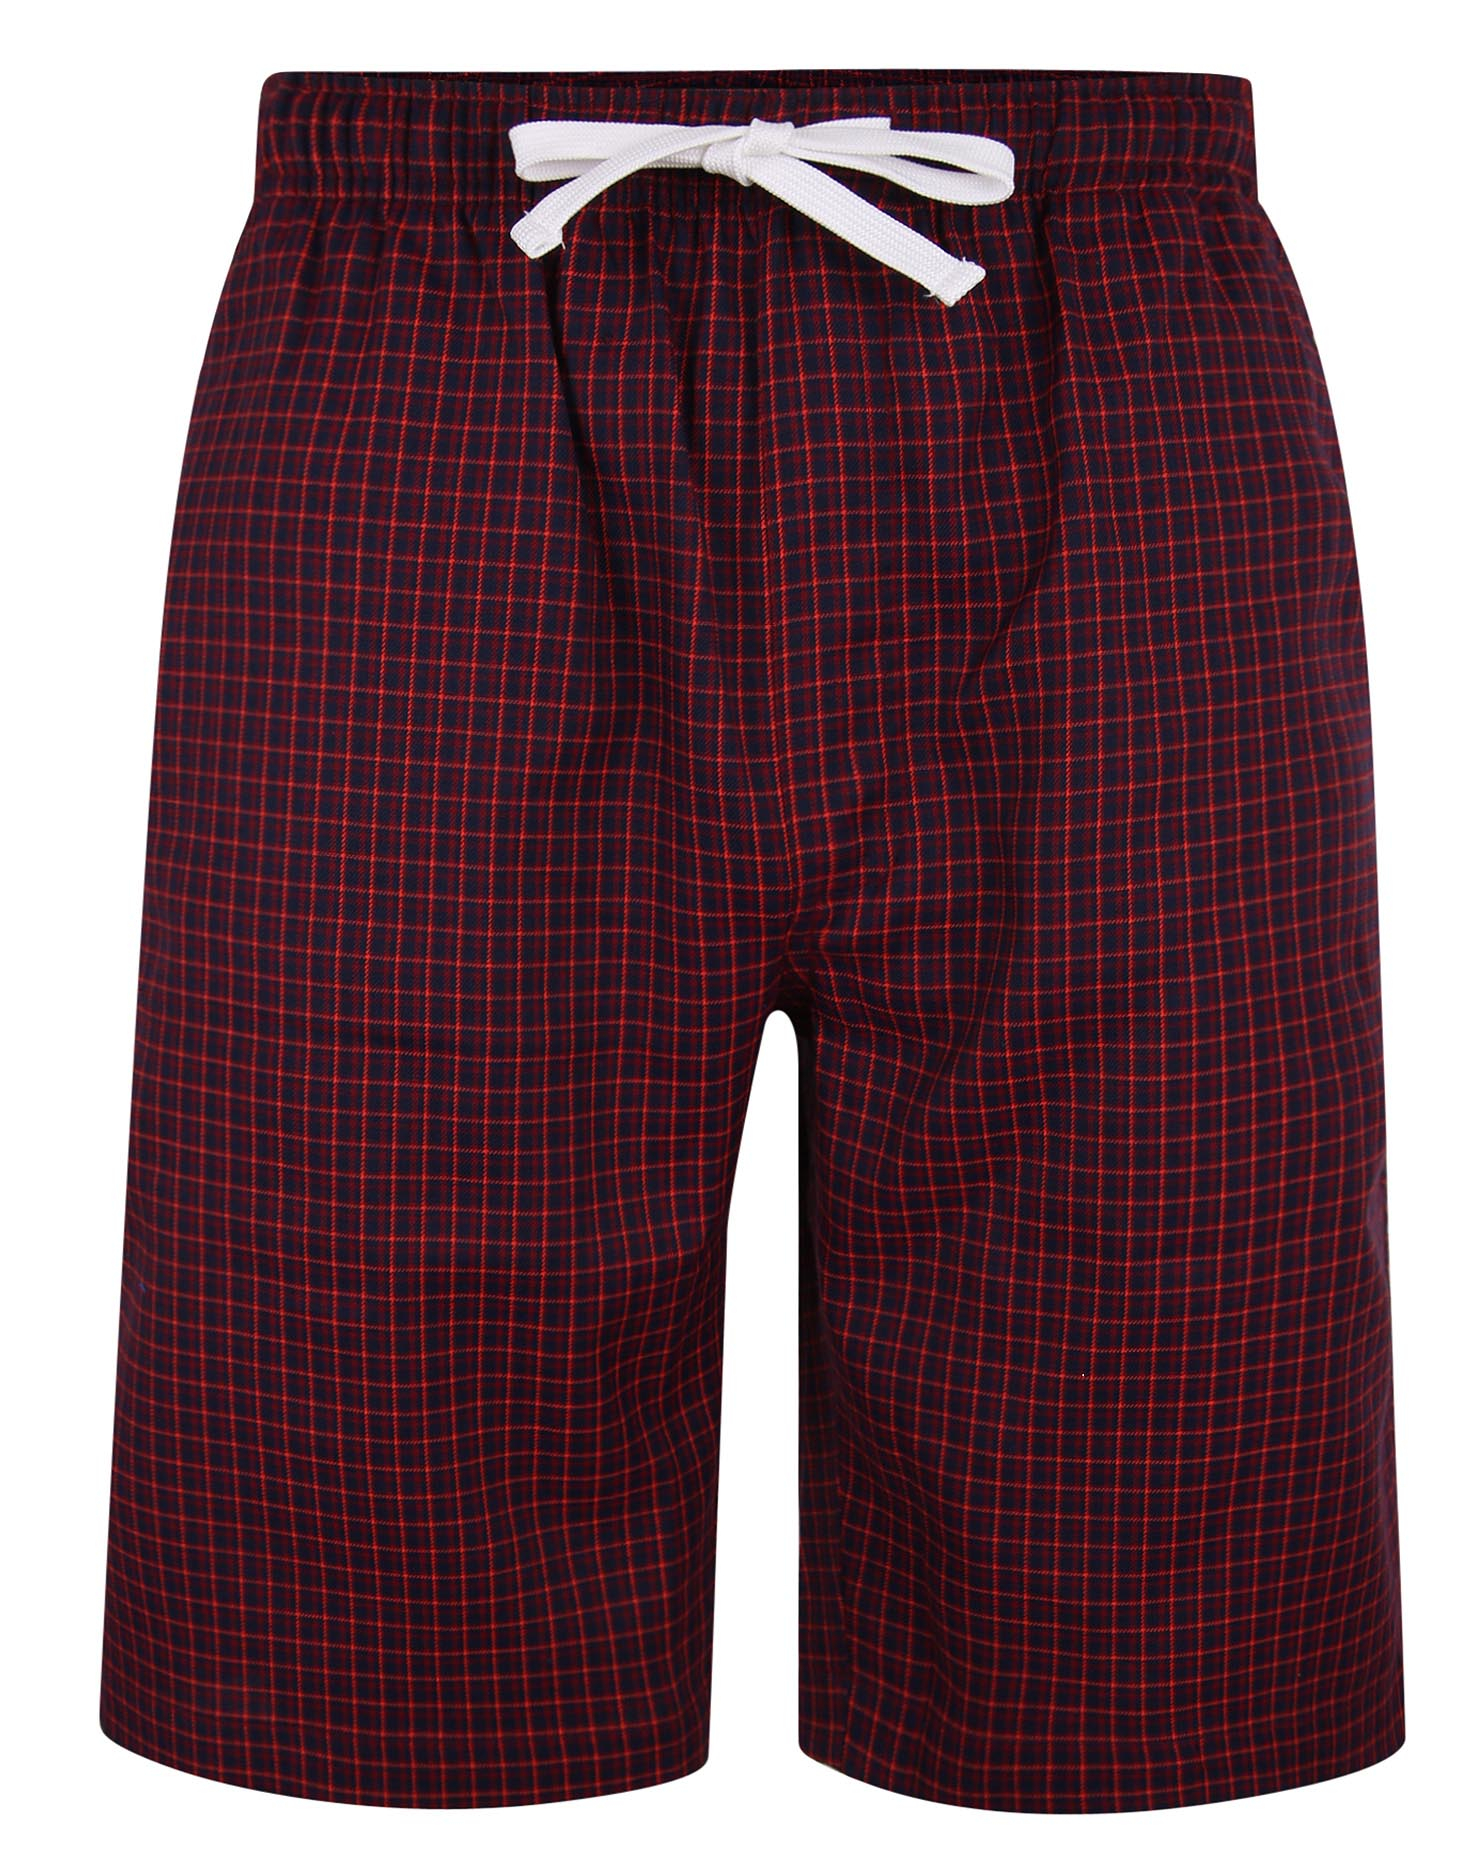 8XL Pyjama Short in Übergröße Allsize AL 99817 4XL 5XL 6XL,7XL 